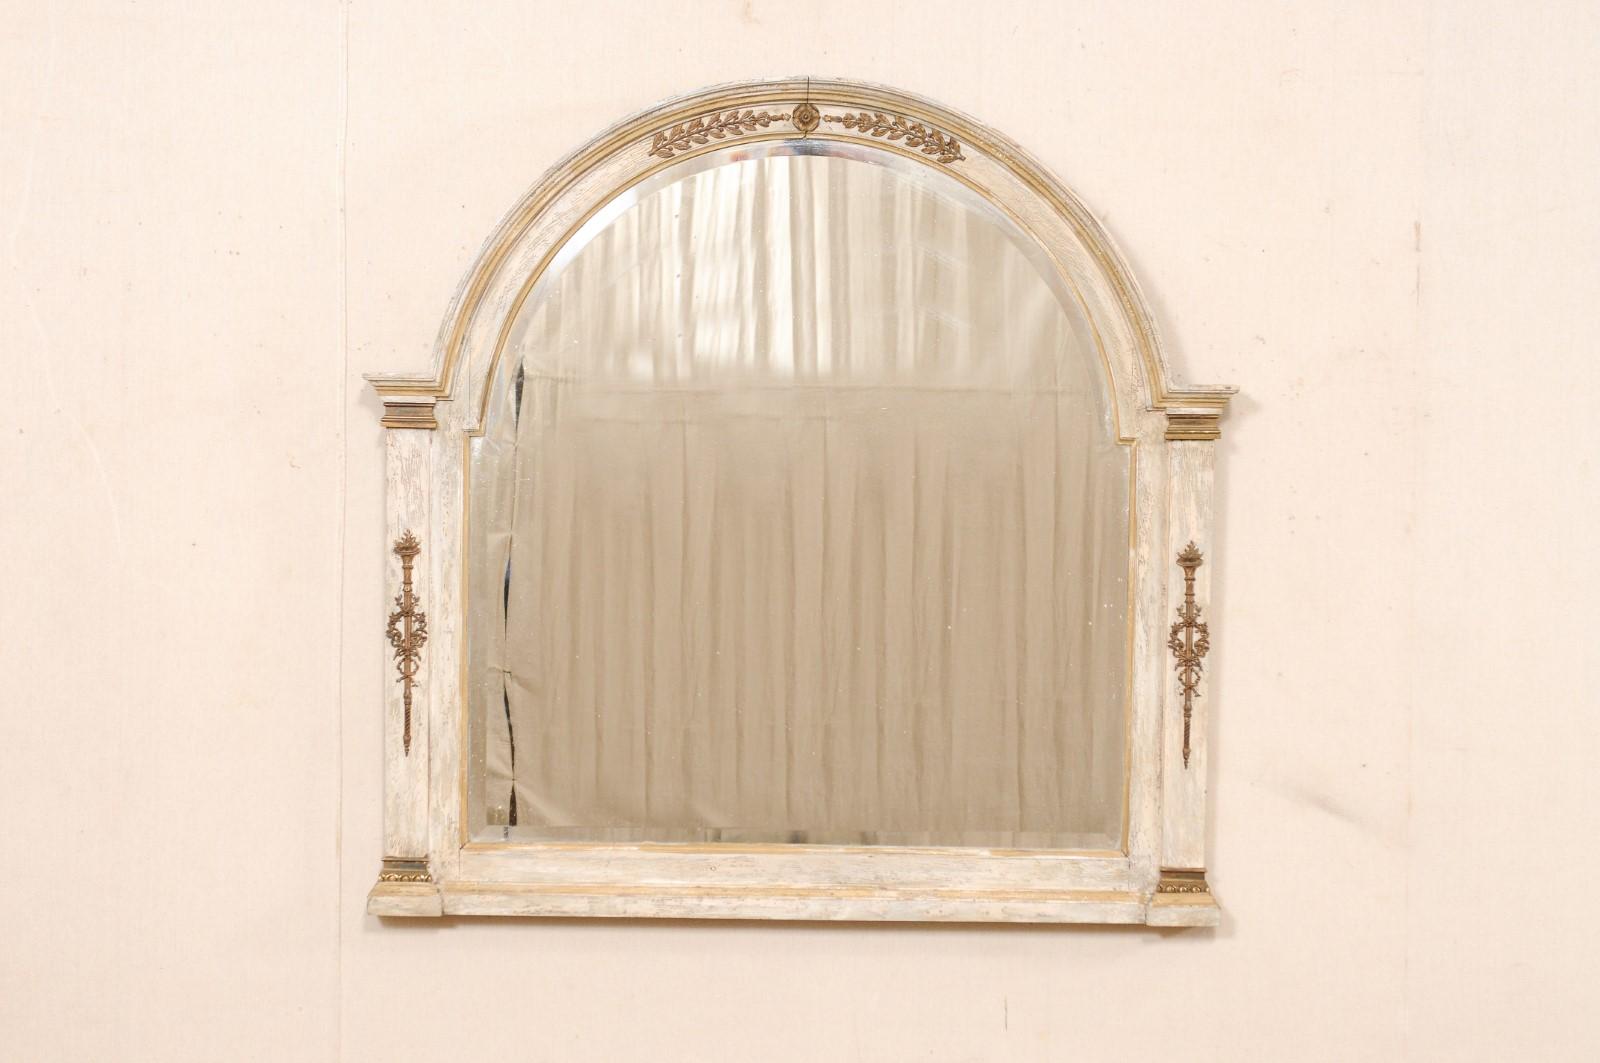 Miroir en bois sculpté et peint du début du 20e siècle. Ce miroir ancien de France a un cadre composé d'un magnifique sommet en forme d'arc, qui se termine aux épaules par deux côtés en forme de colonne, qui flanquent le miroir au centre. Le cadre